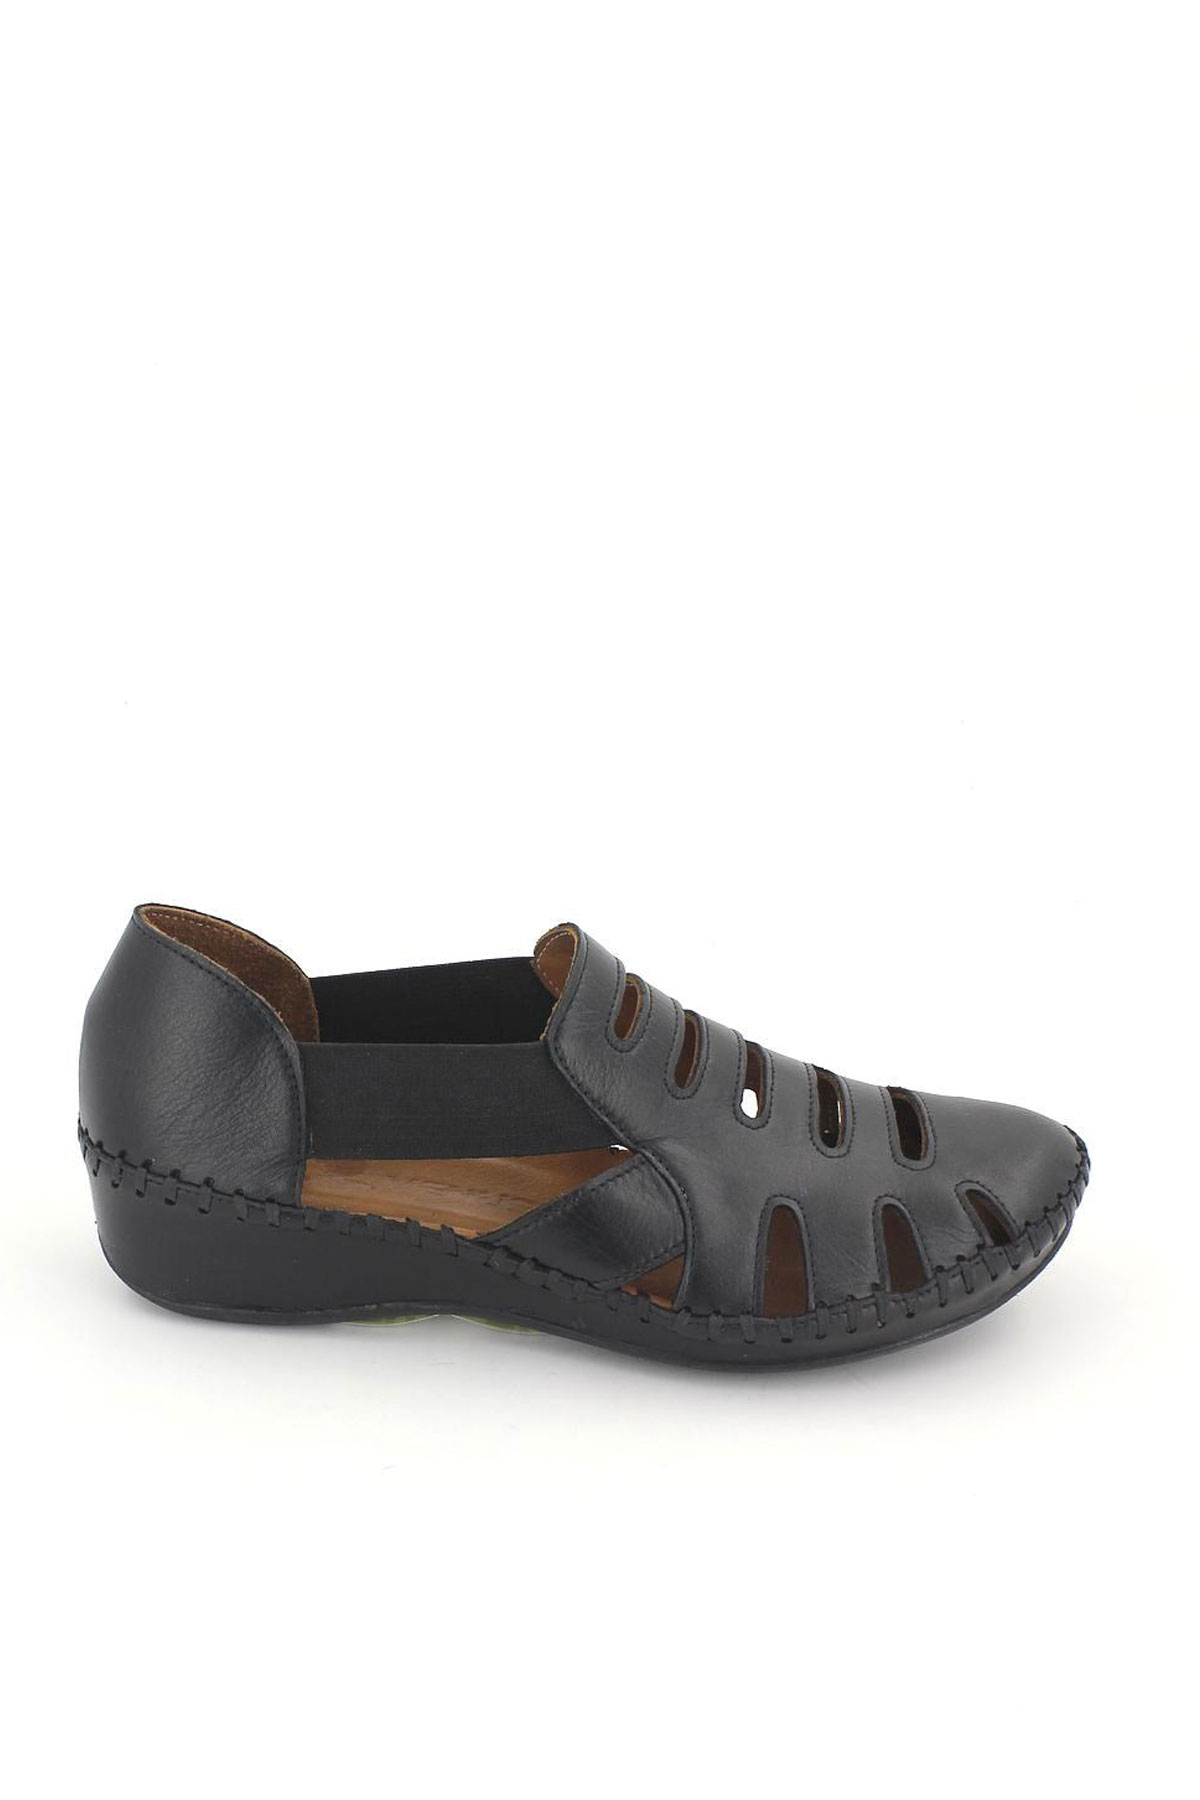 Kadın Comfort Deri Sandalet Siyah 18791395